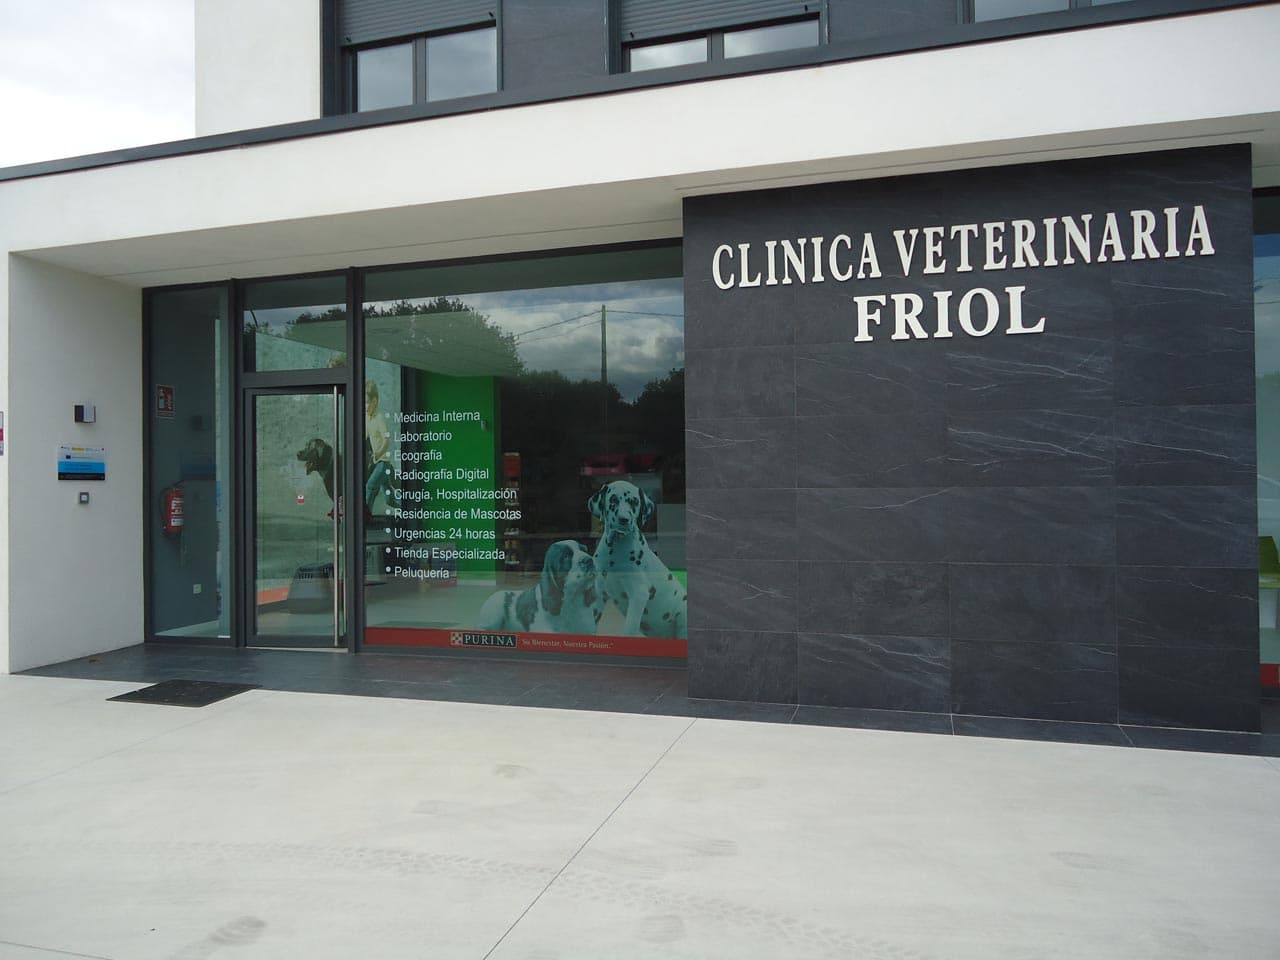 Clínica Veterinaria Friol